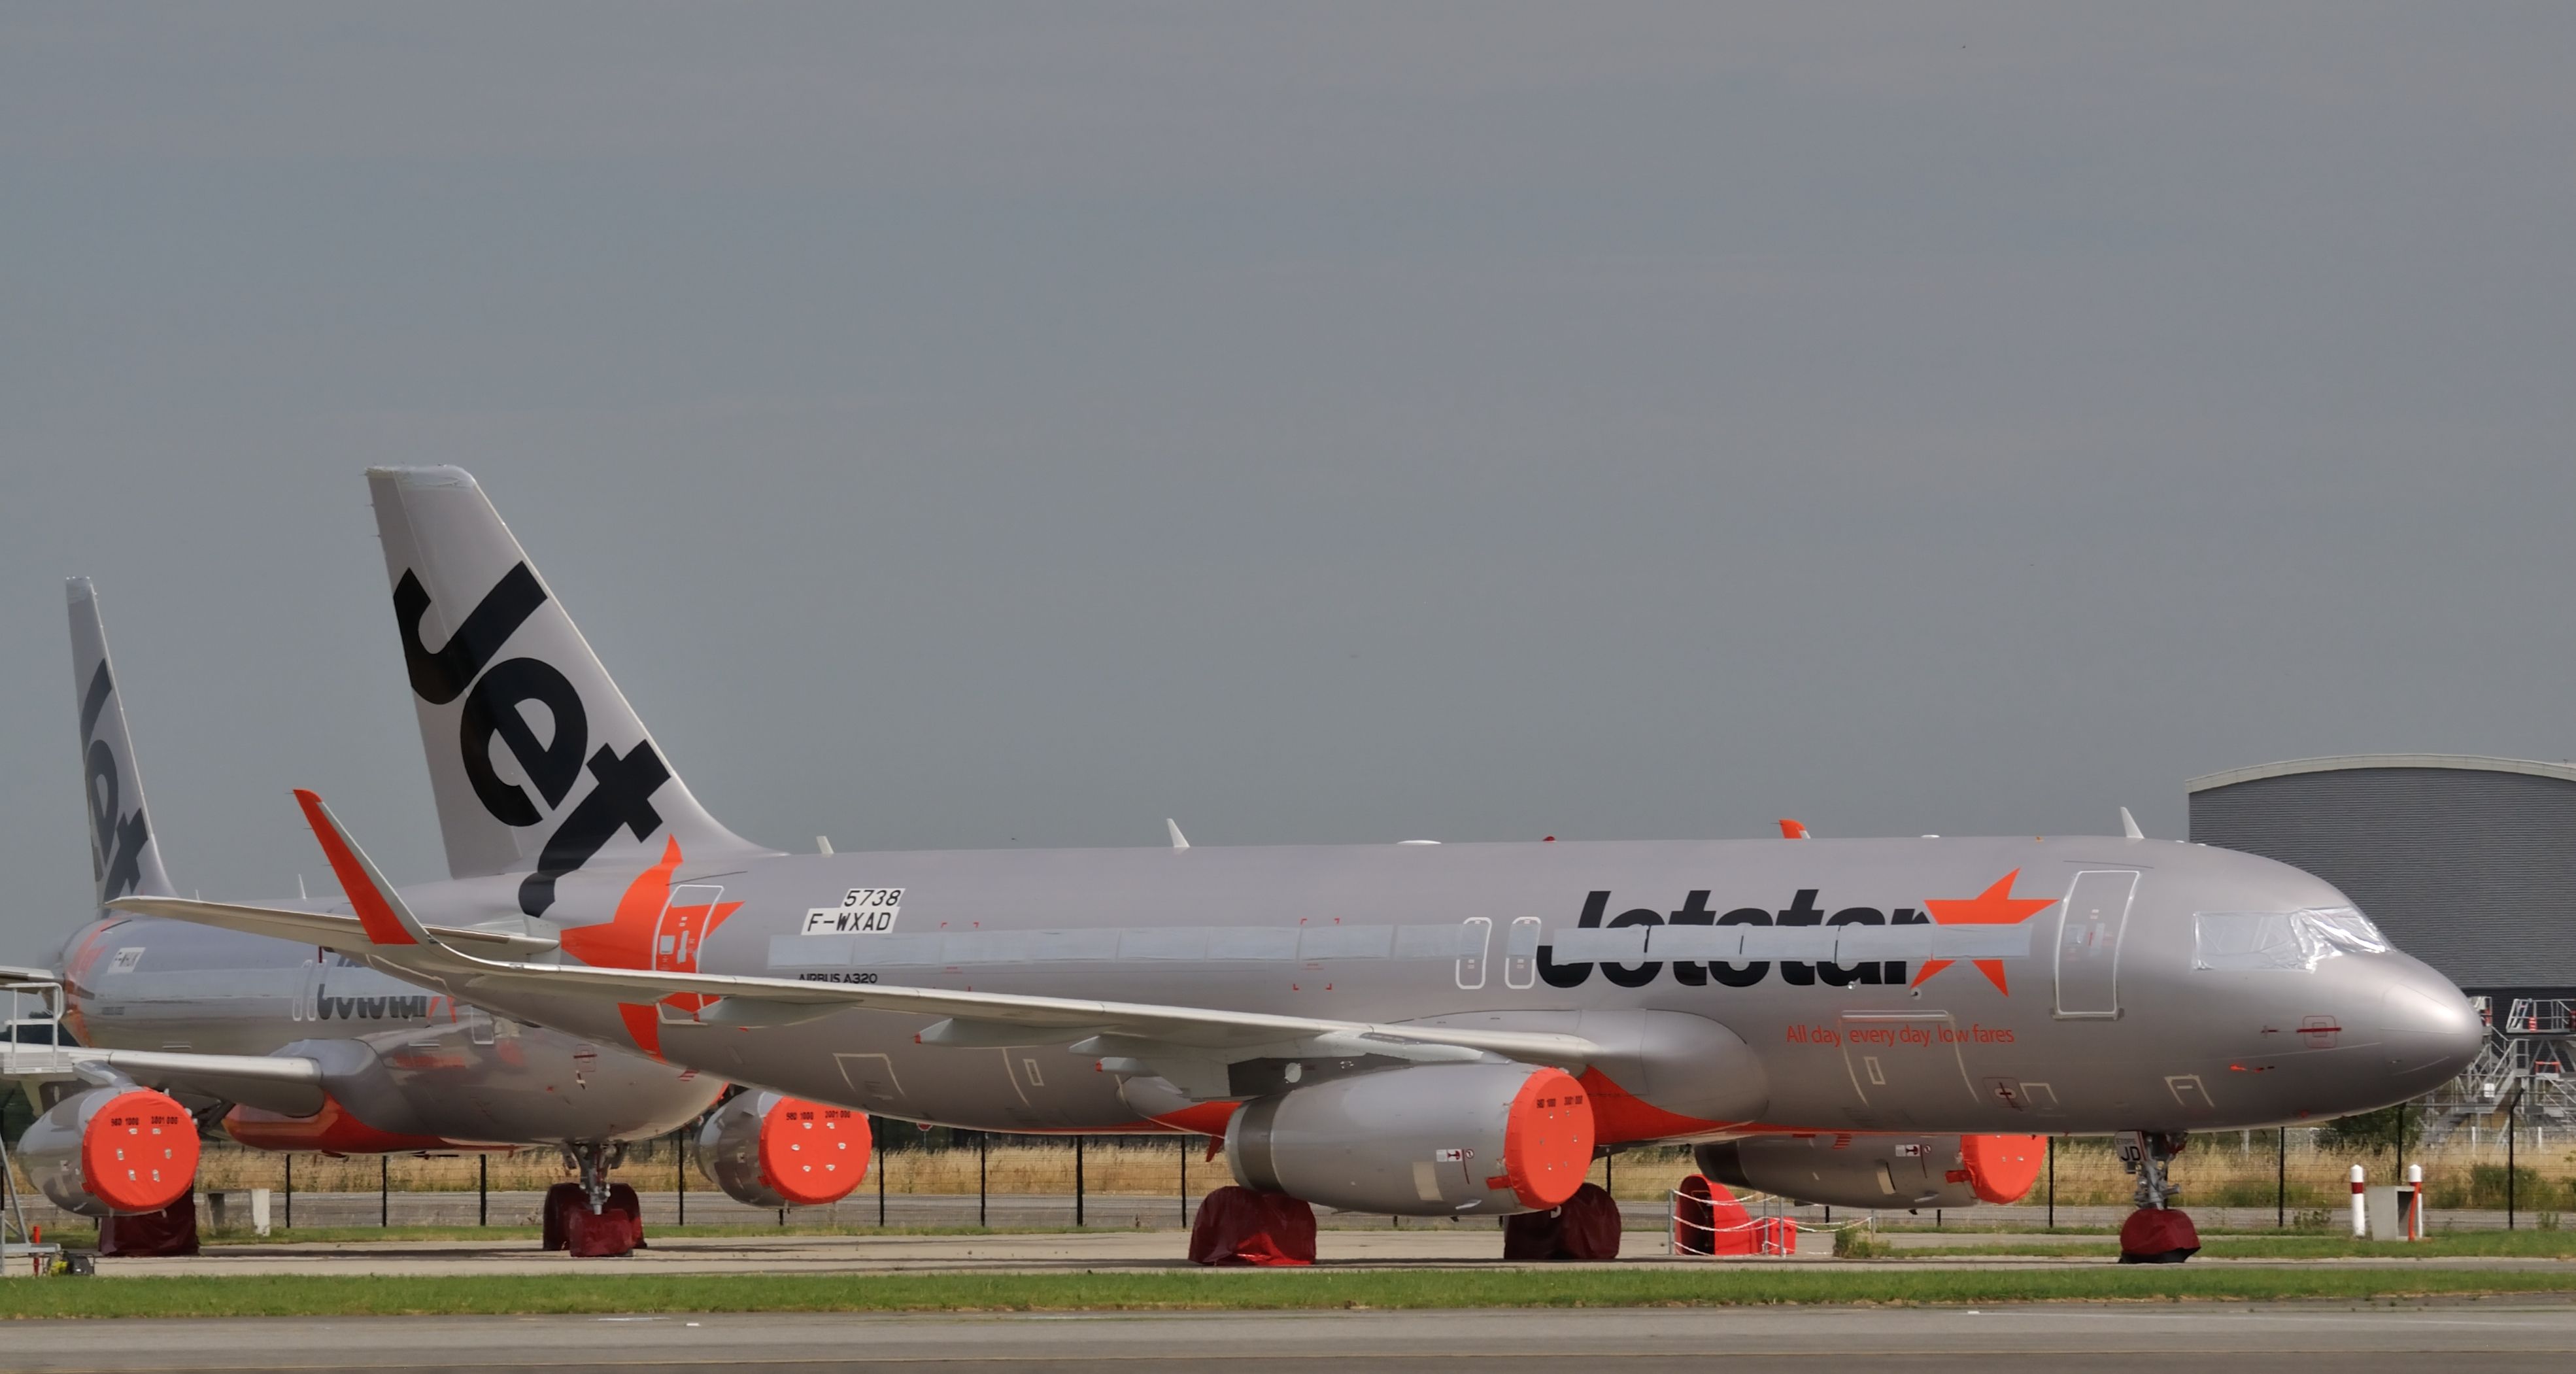 Jetstar A320 in storage.